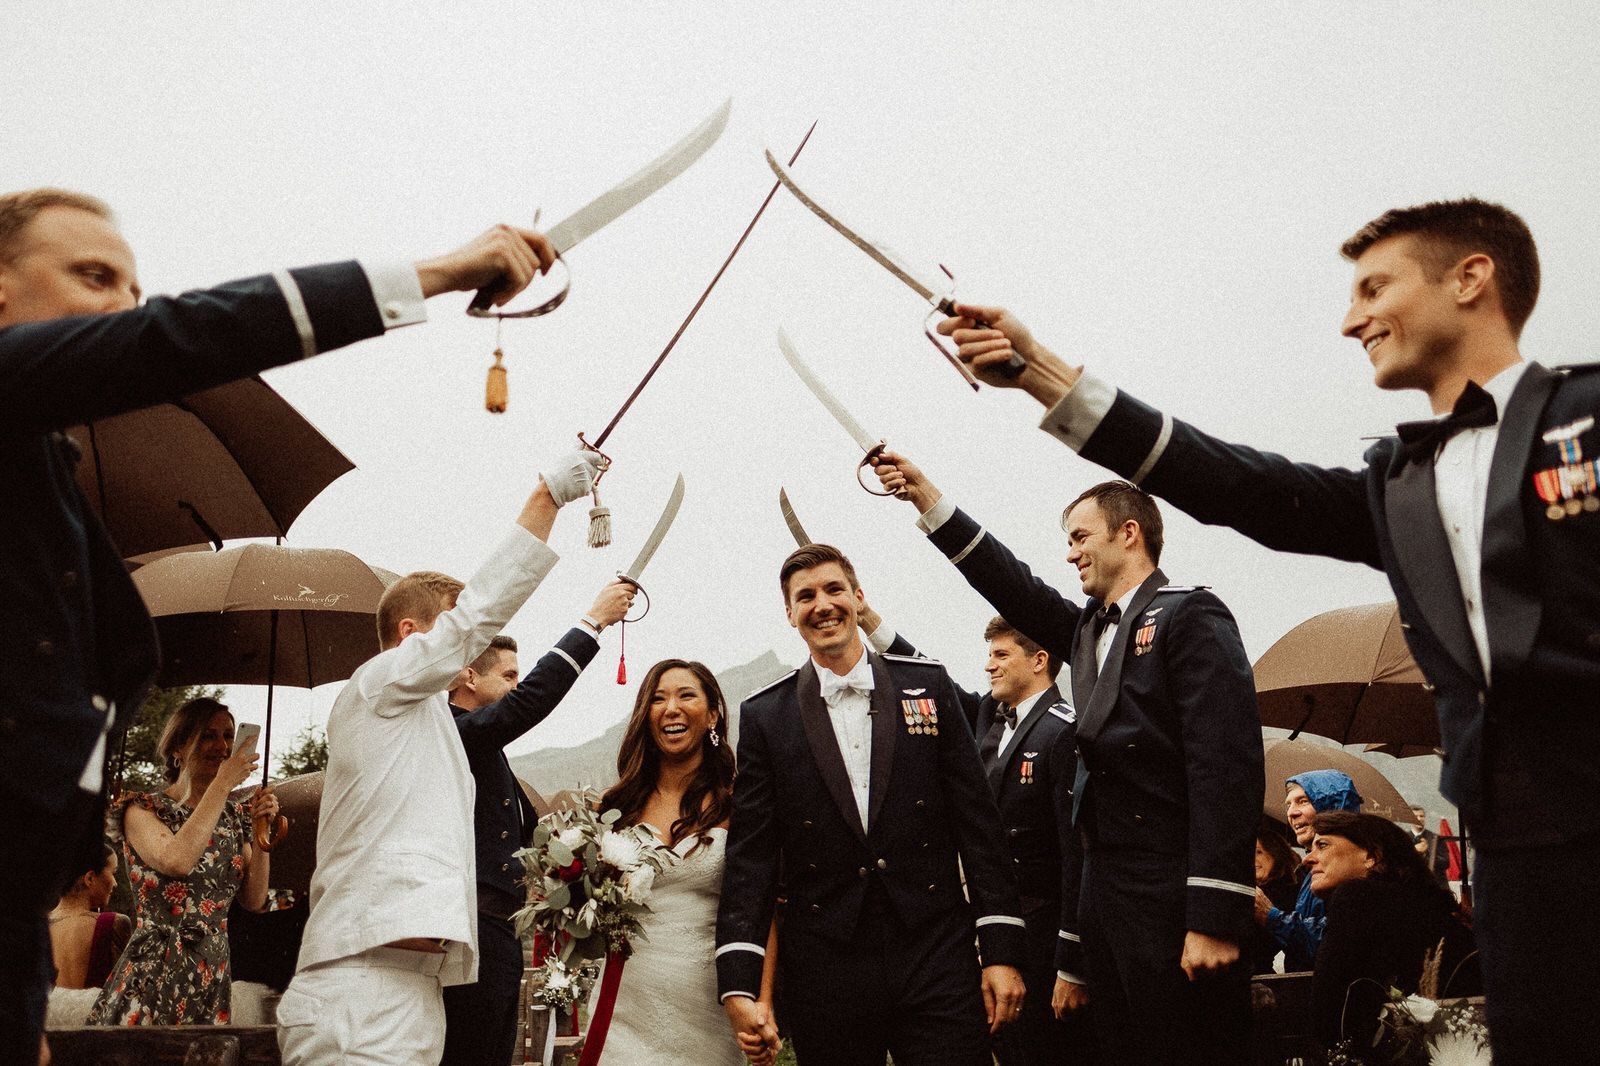 Ceremony - Wedding in the Dolomites, Colfosco, Italy - Italian Apls